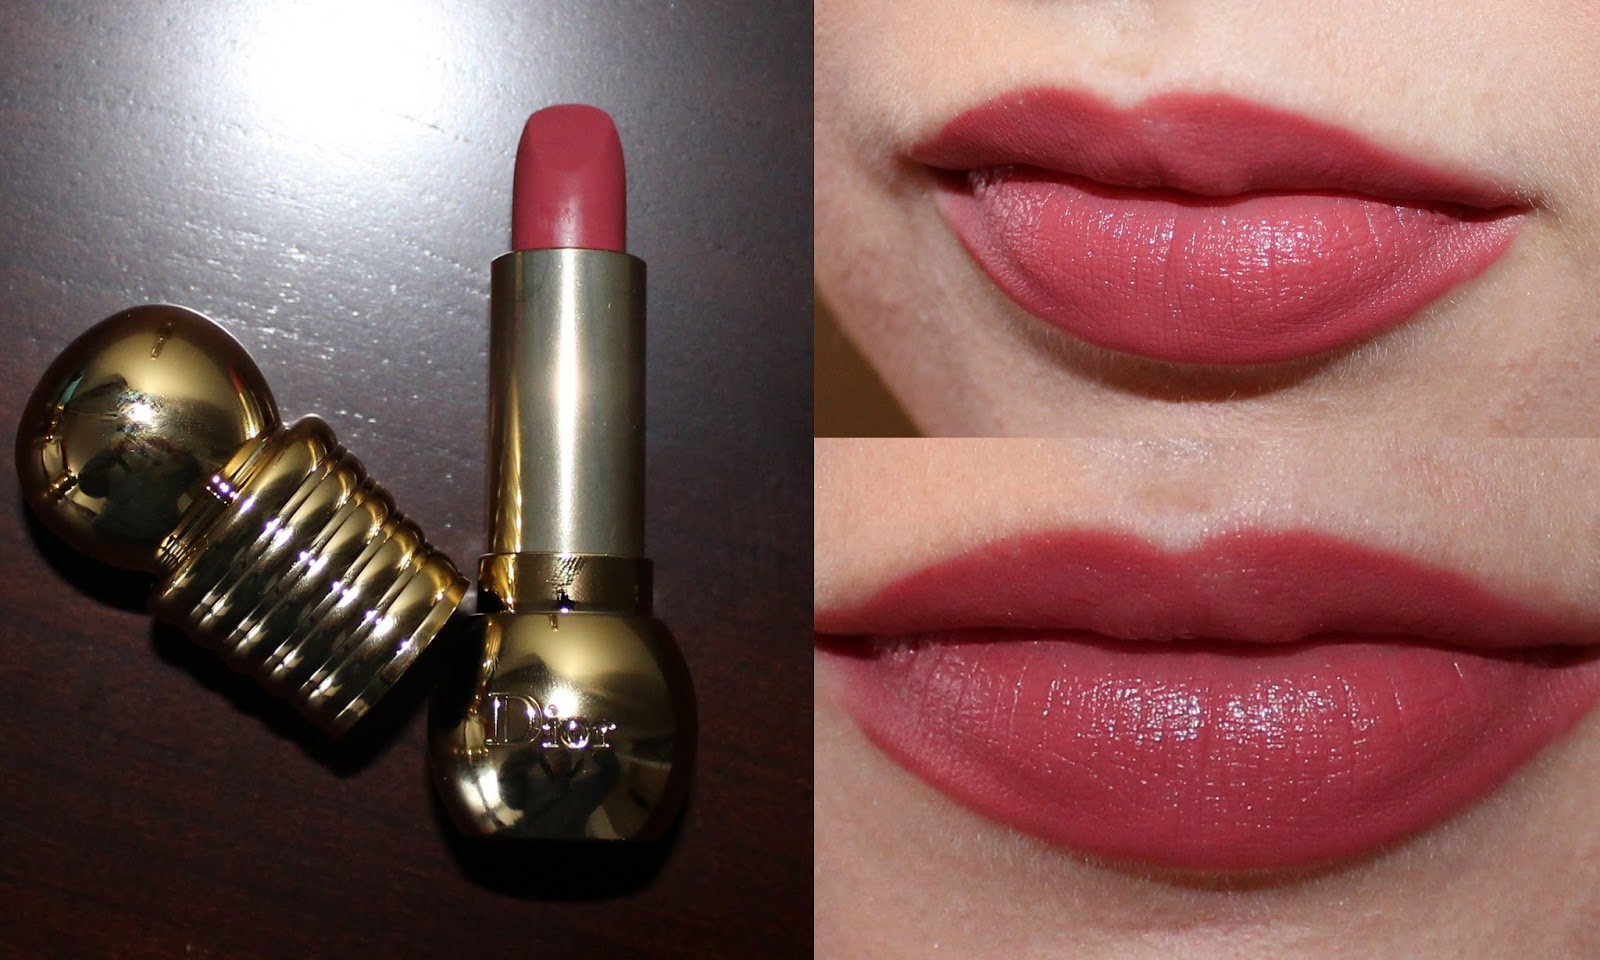 dior diorella lipstick